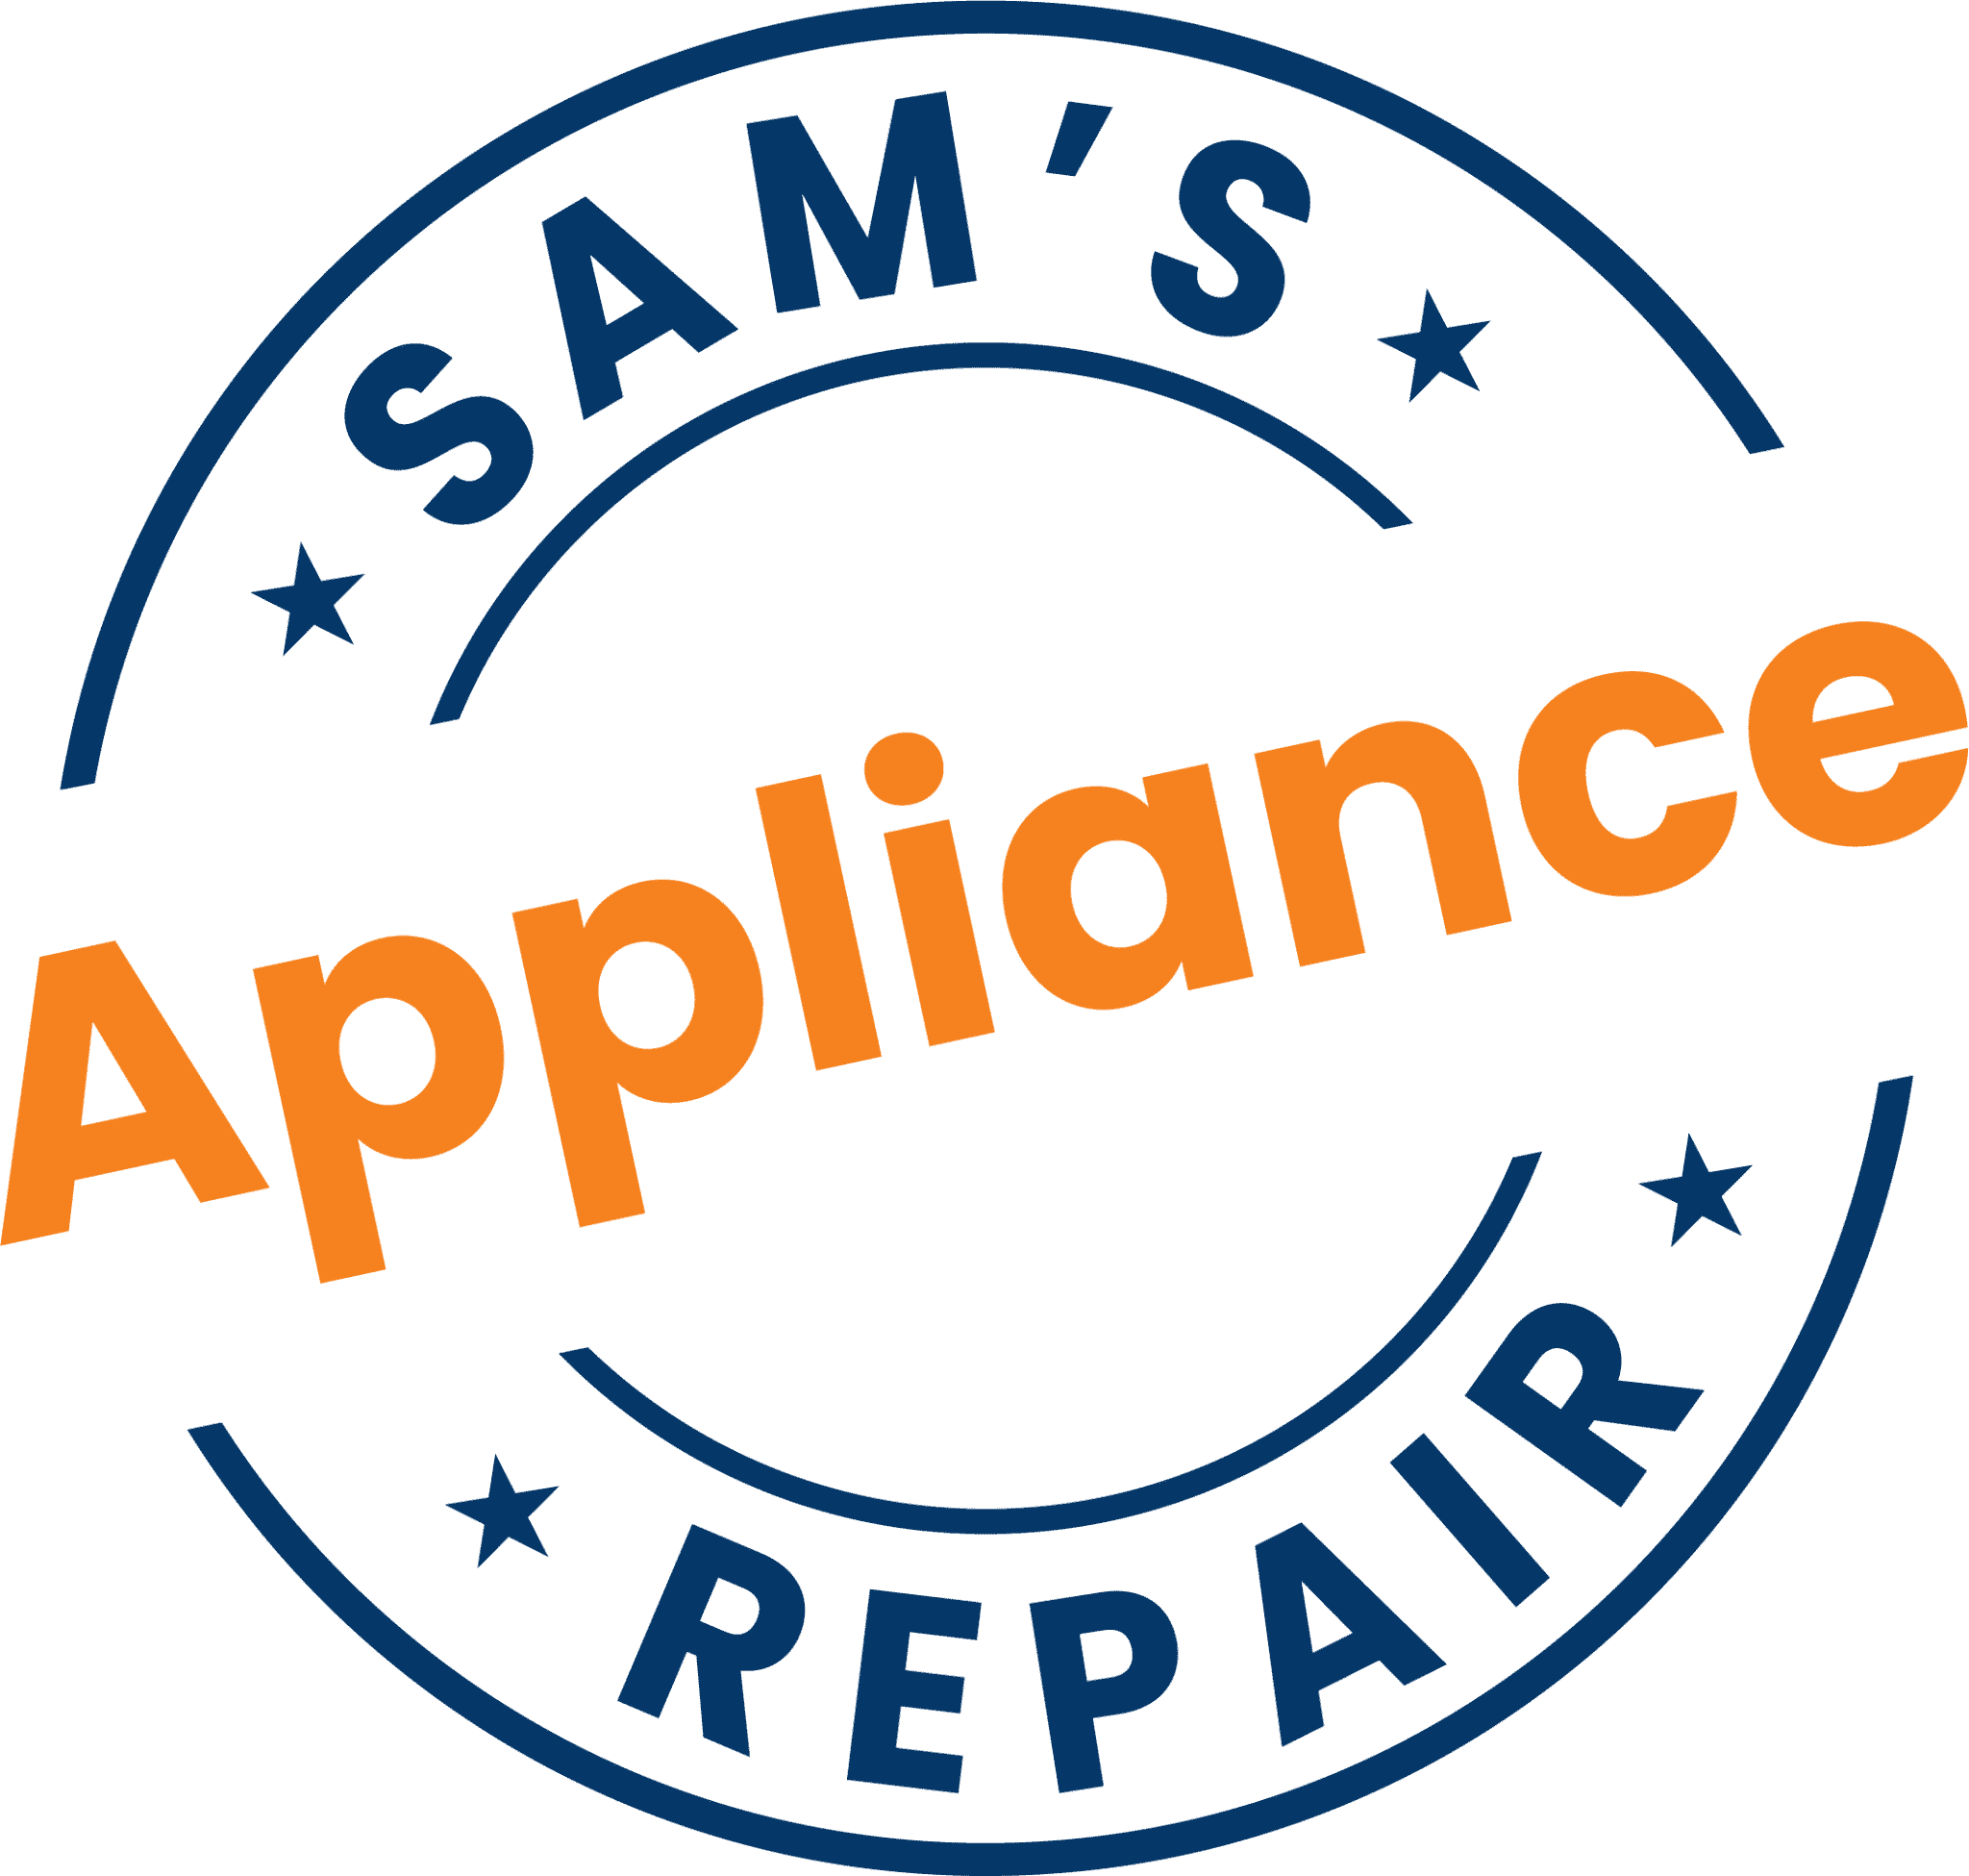 Sam's Appliance Repair logo.